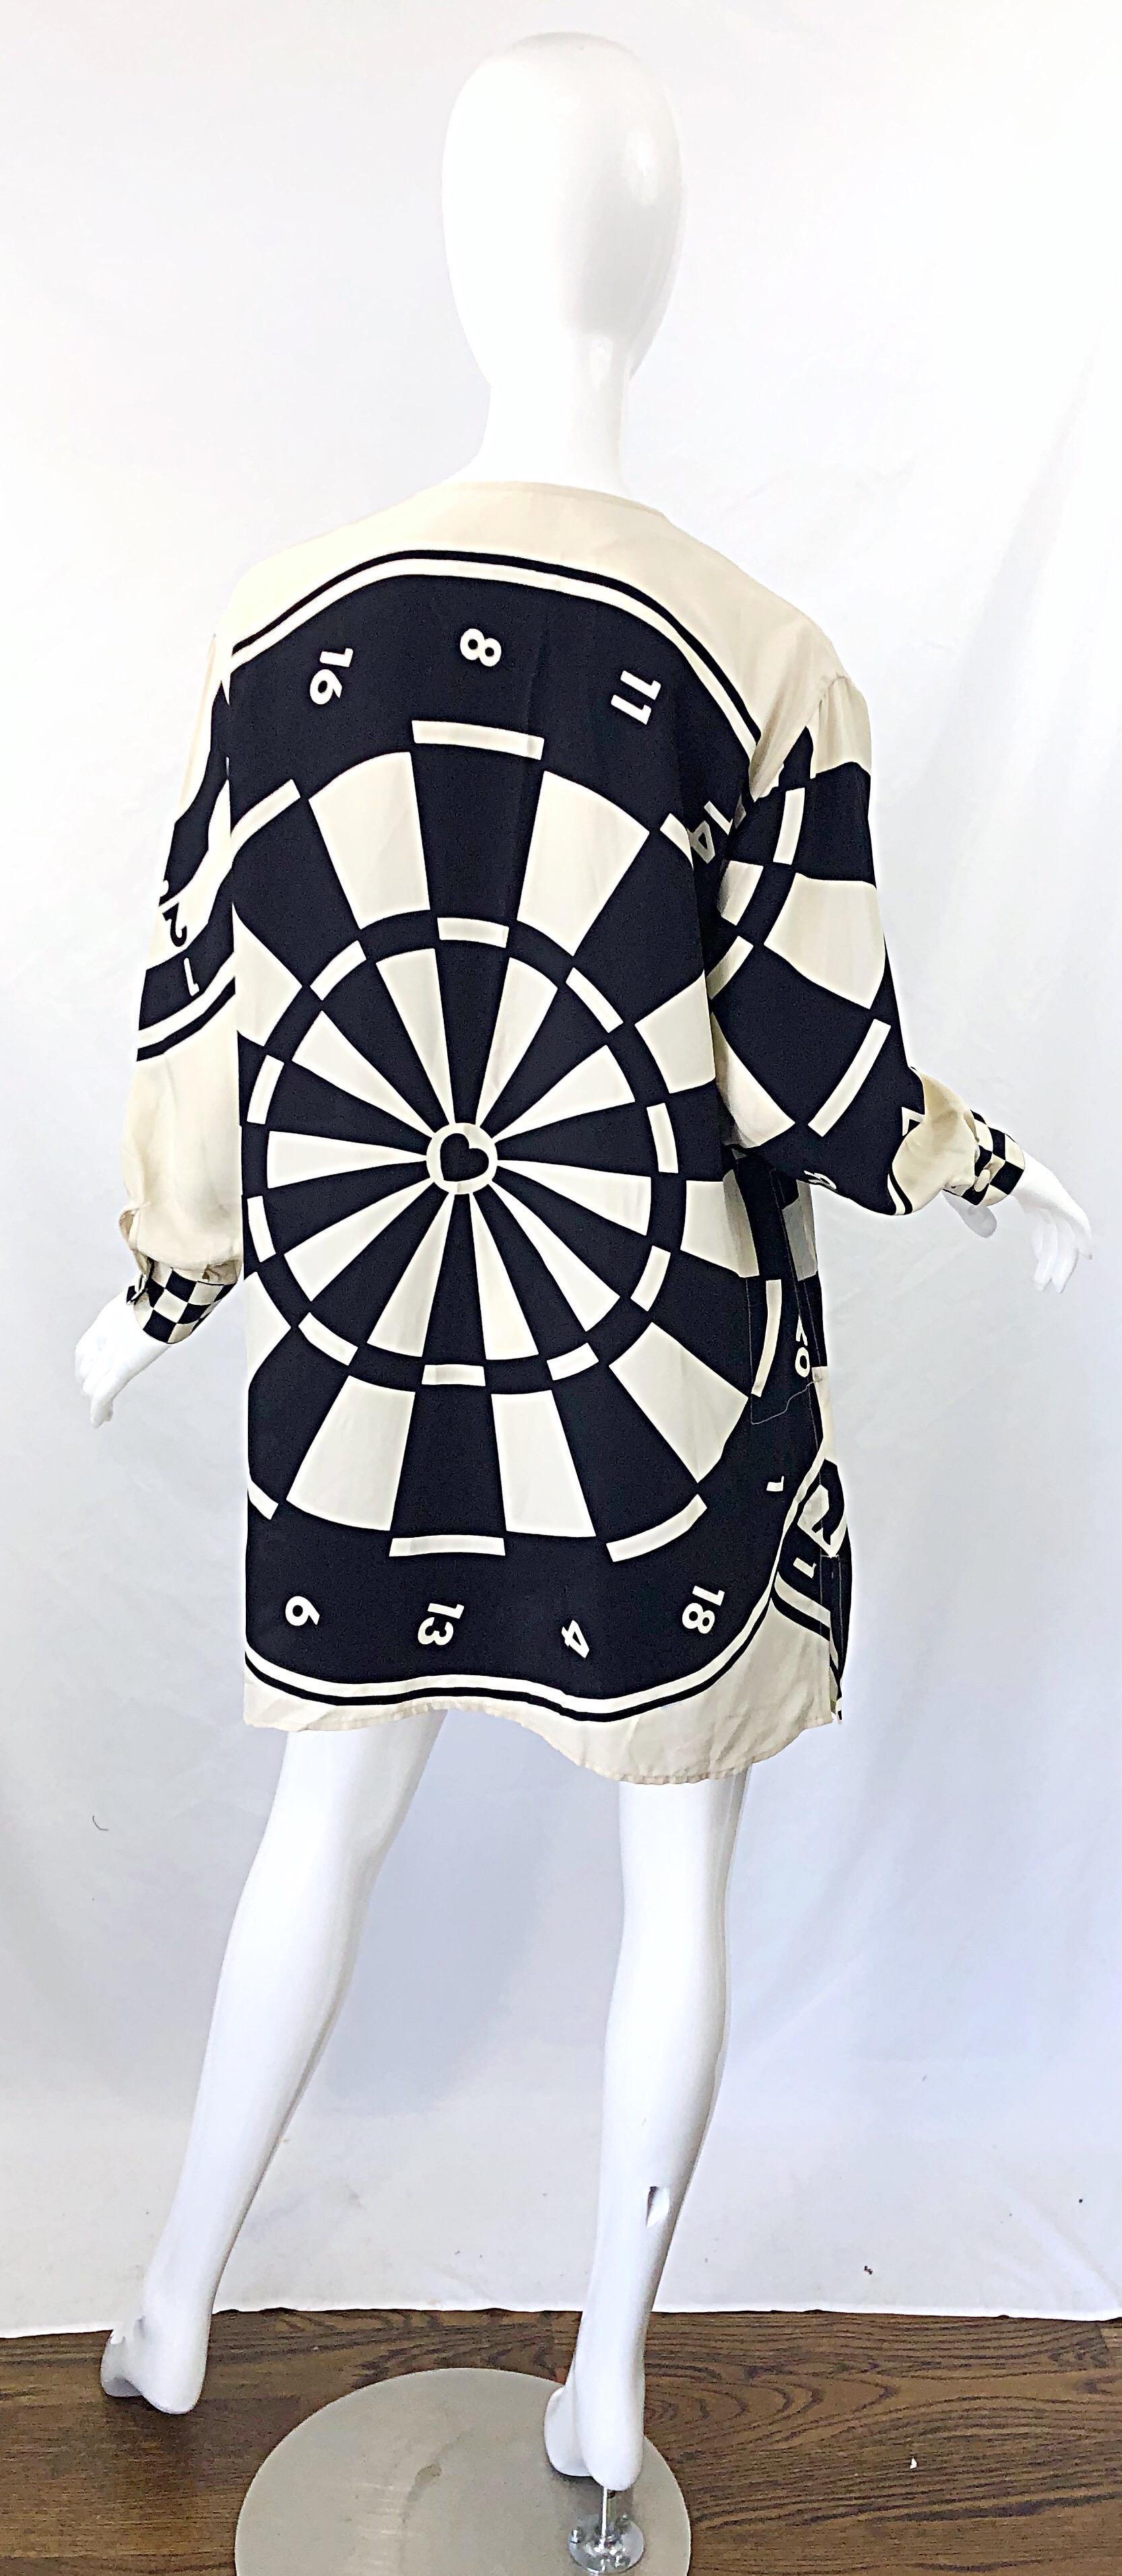 bullseye dressing gown